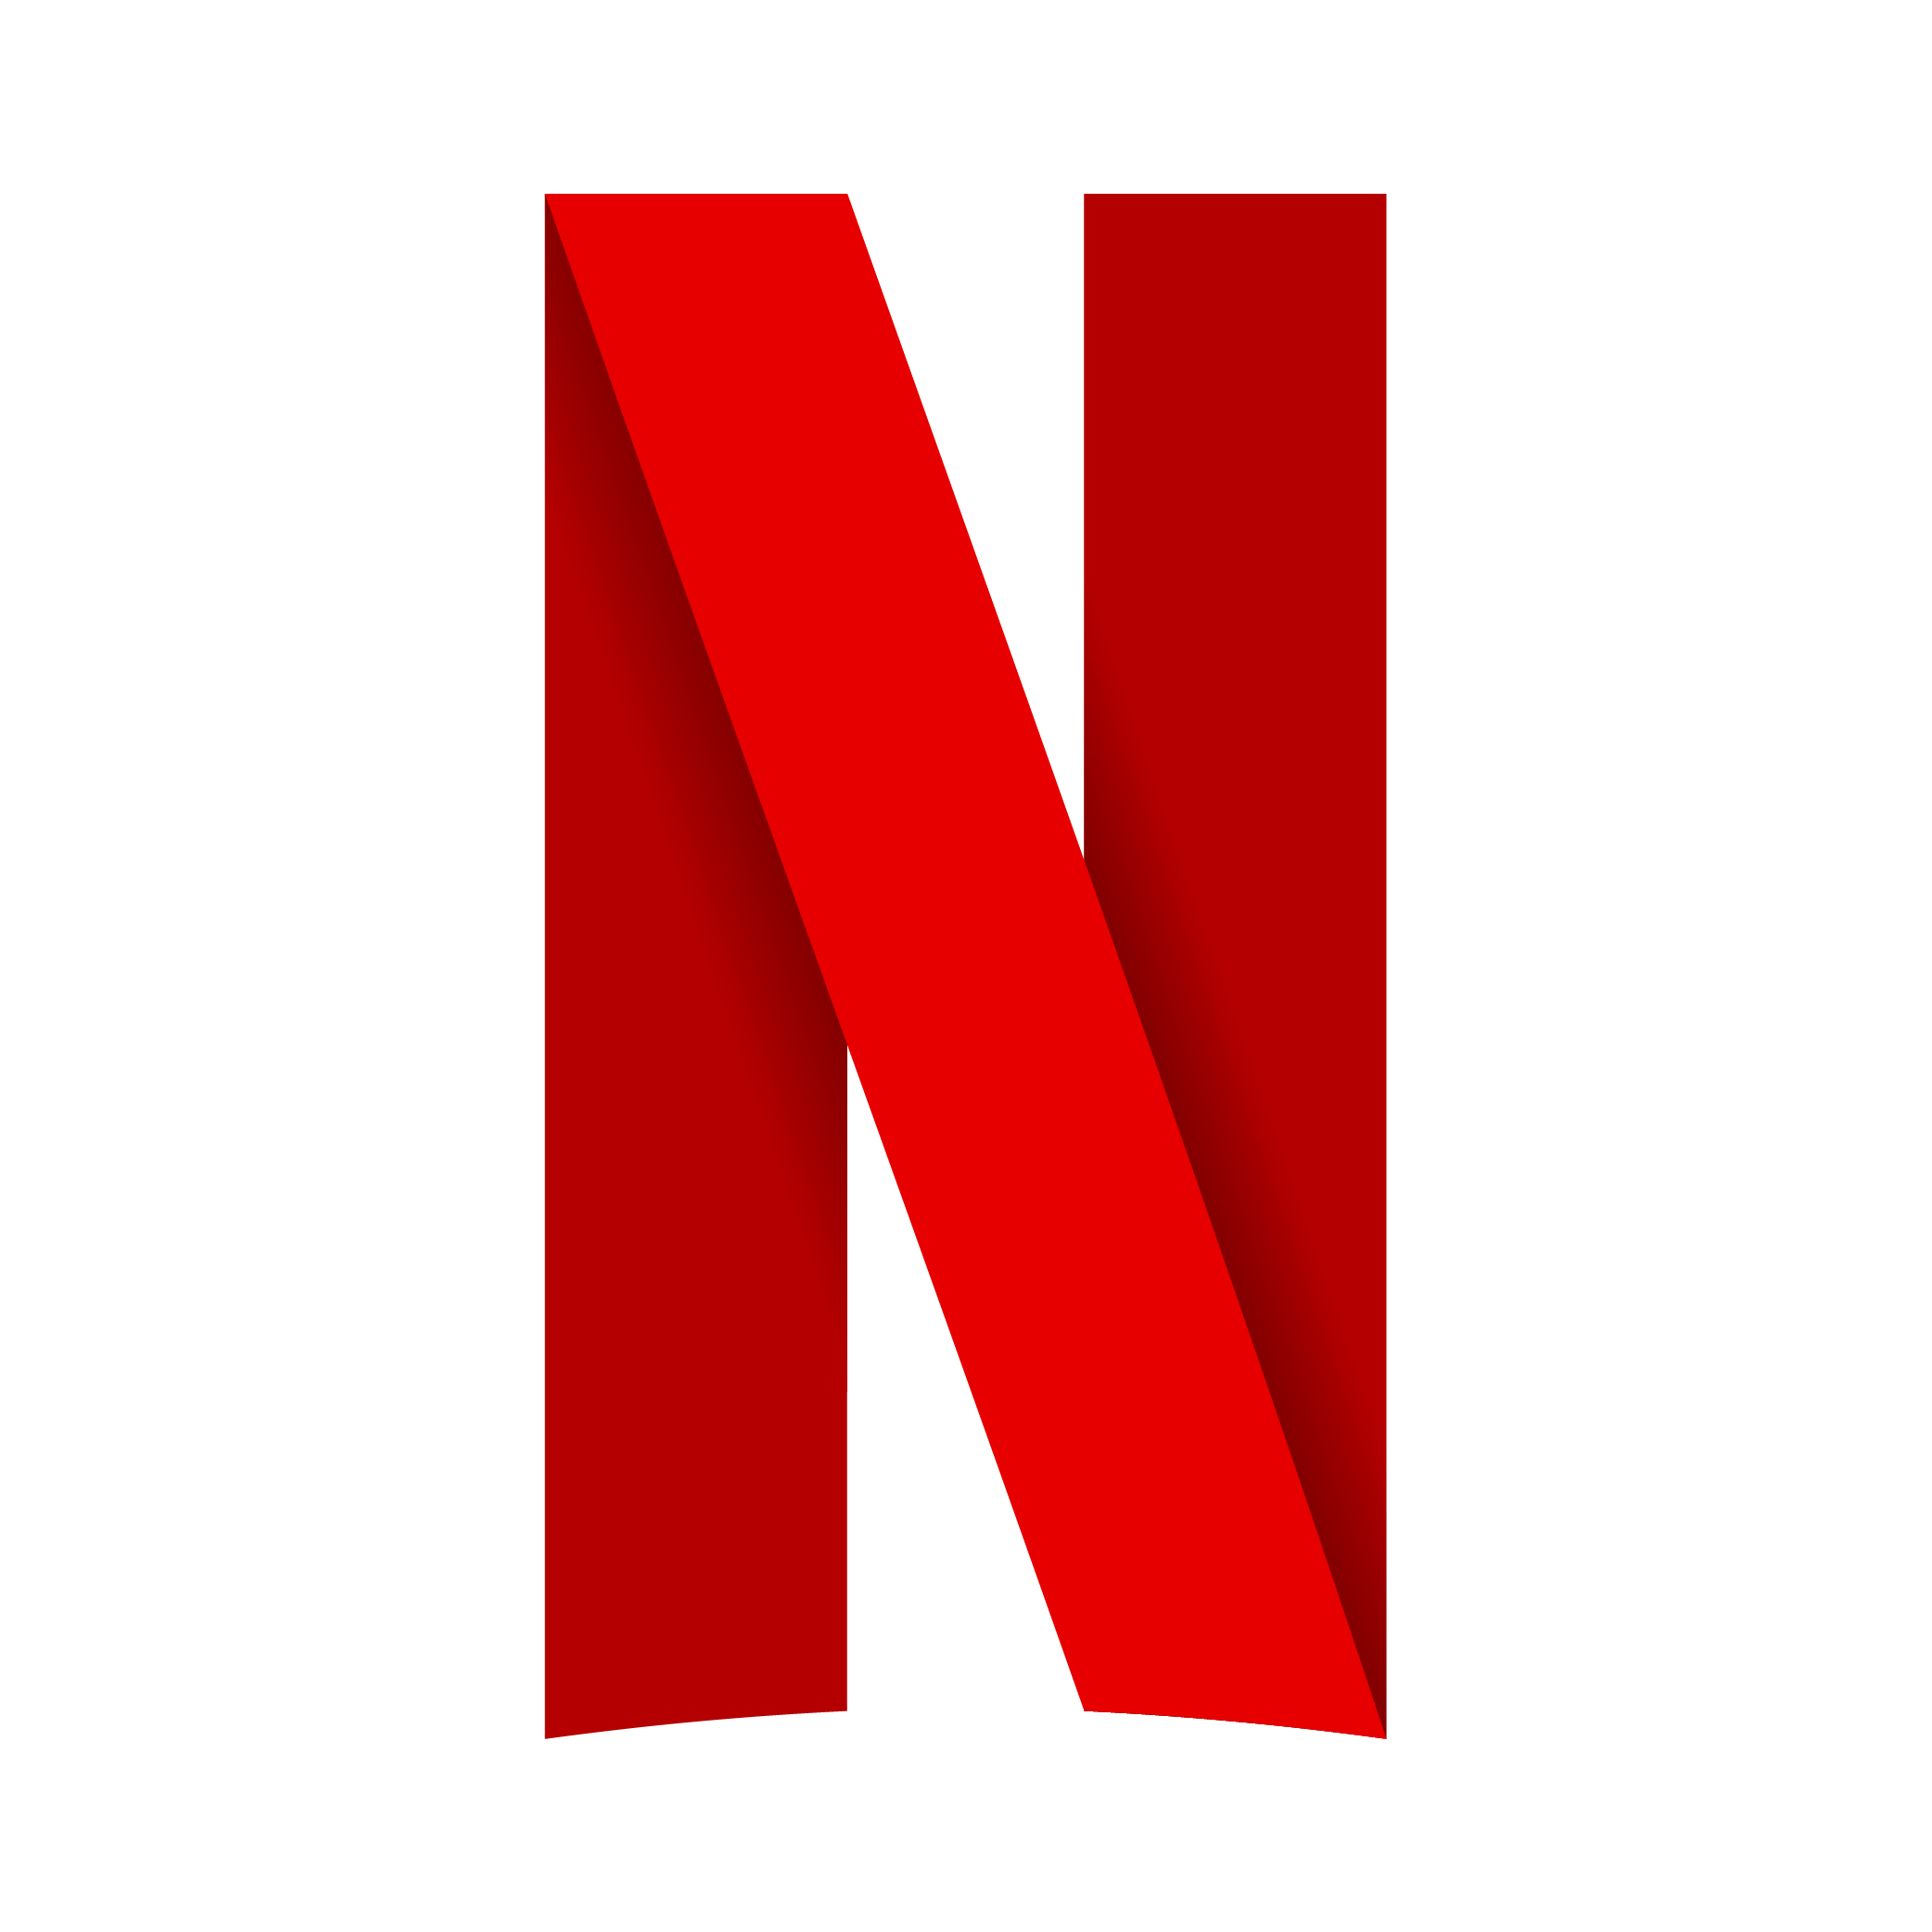 logo de netflix clipart 10 free Cliparts | Download images ... - Netflix Logo Font